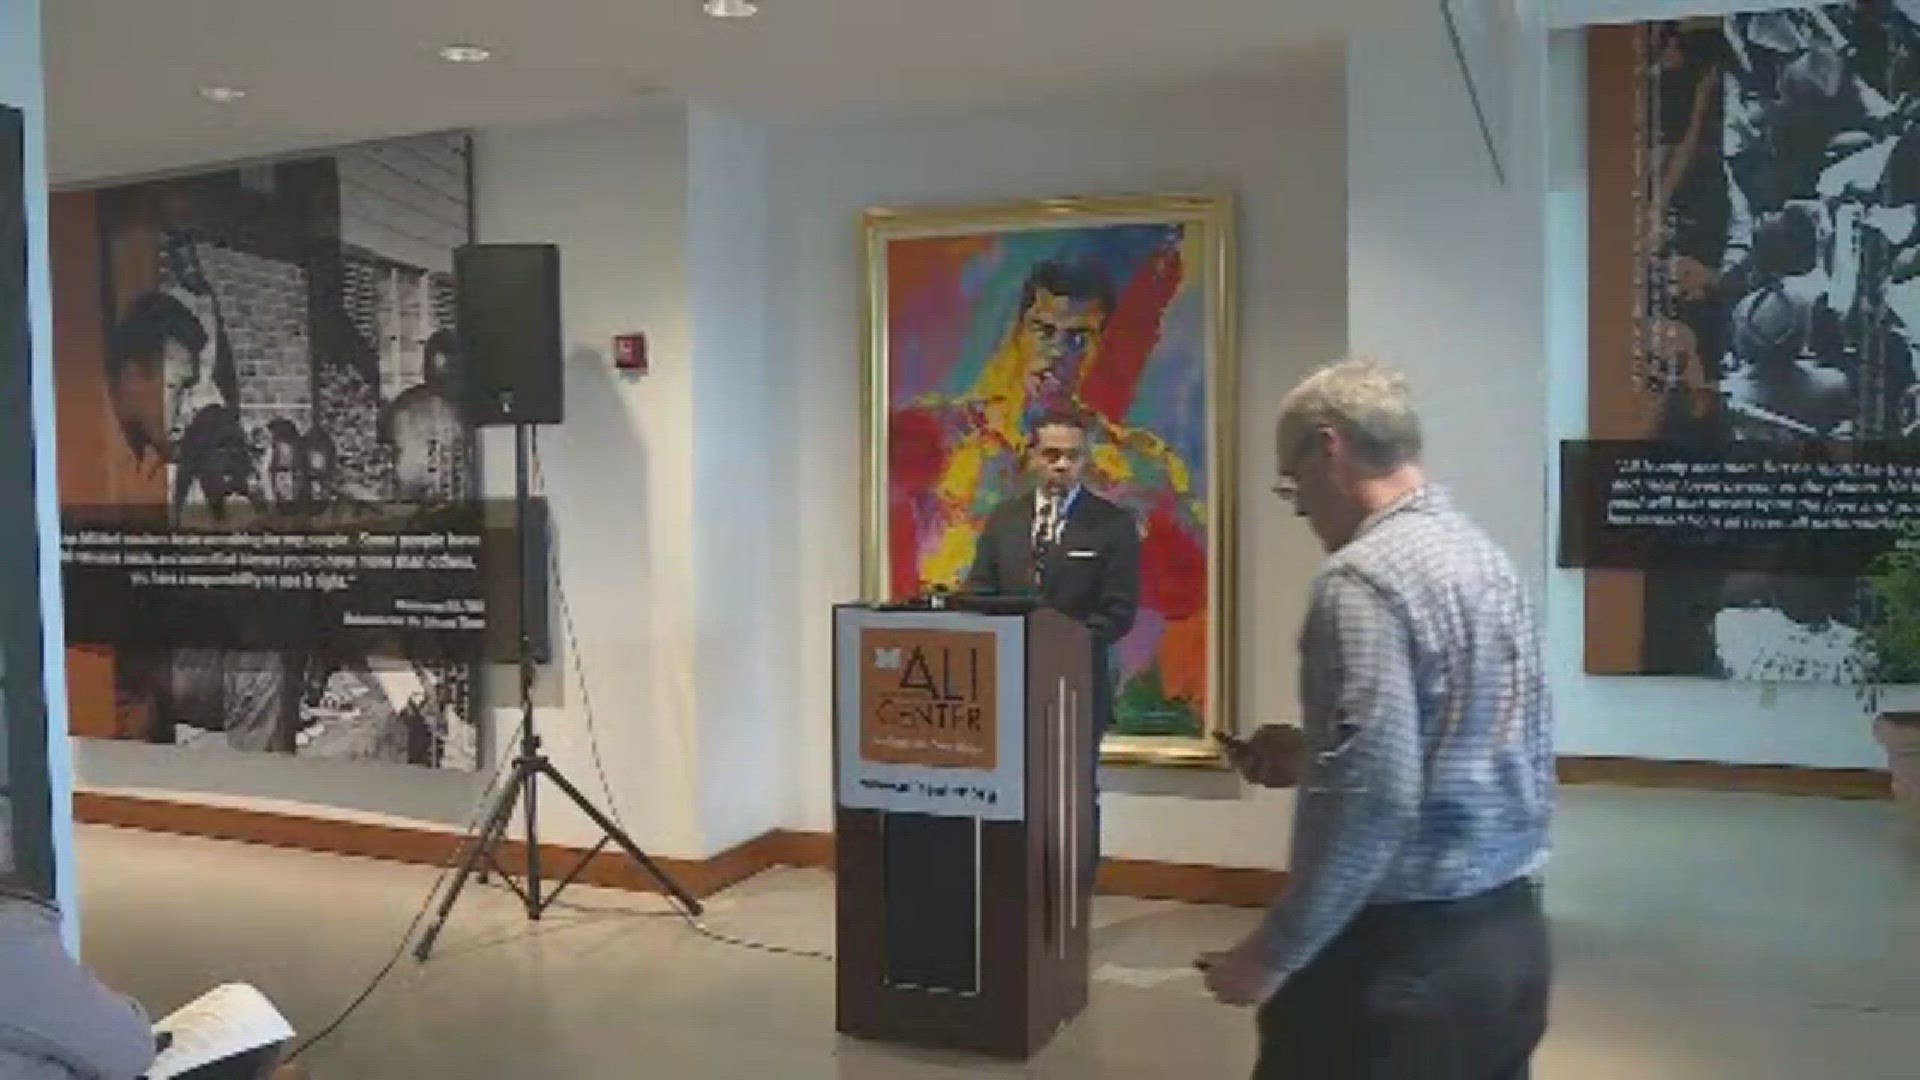 Ali center, foundation announces major gift of artwork